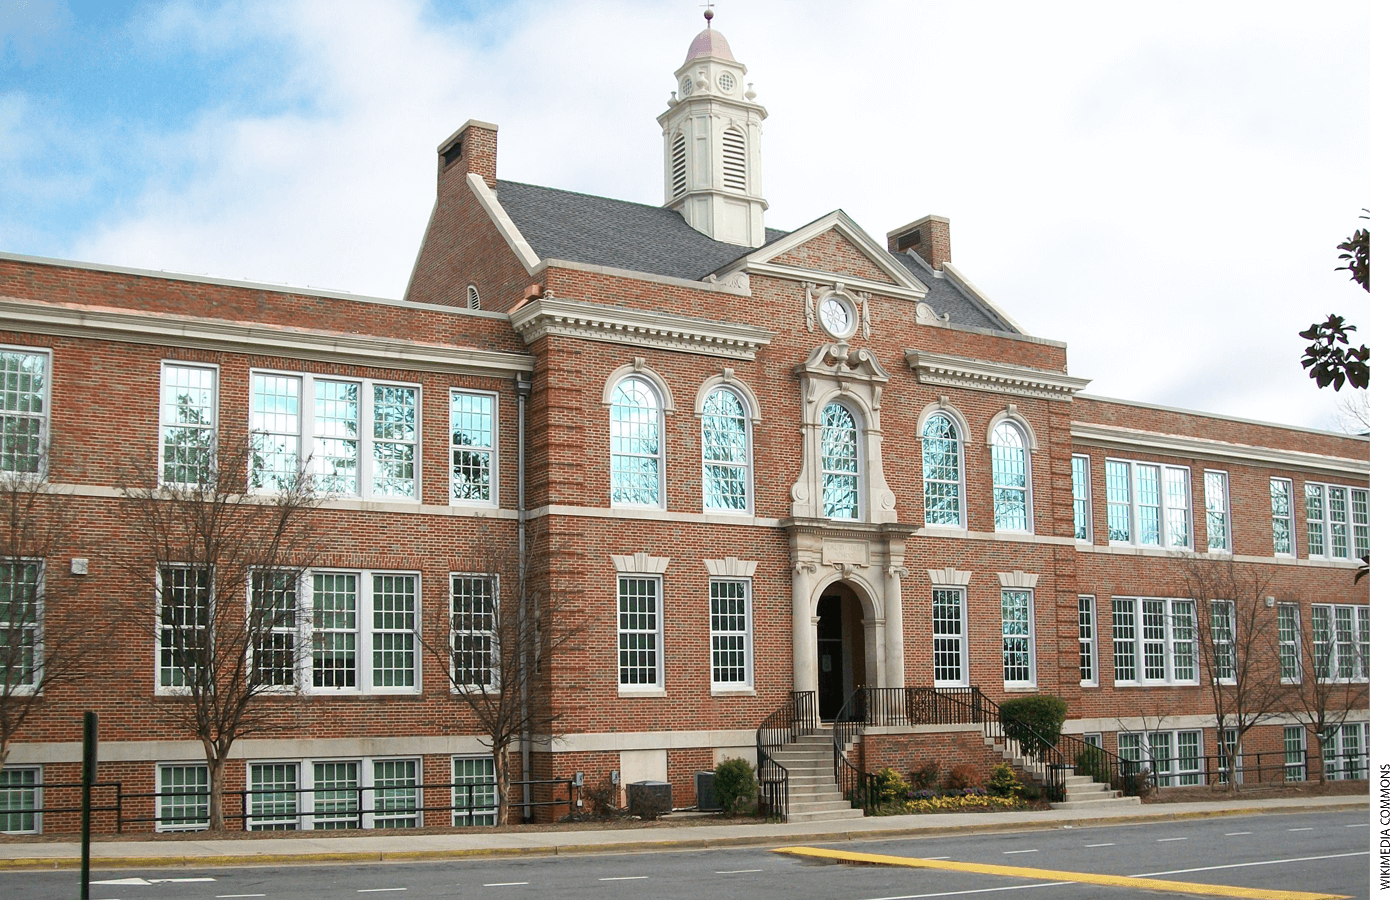 Brick school building